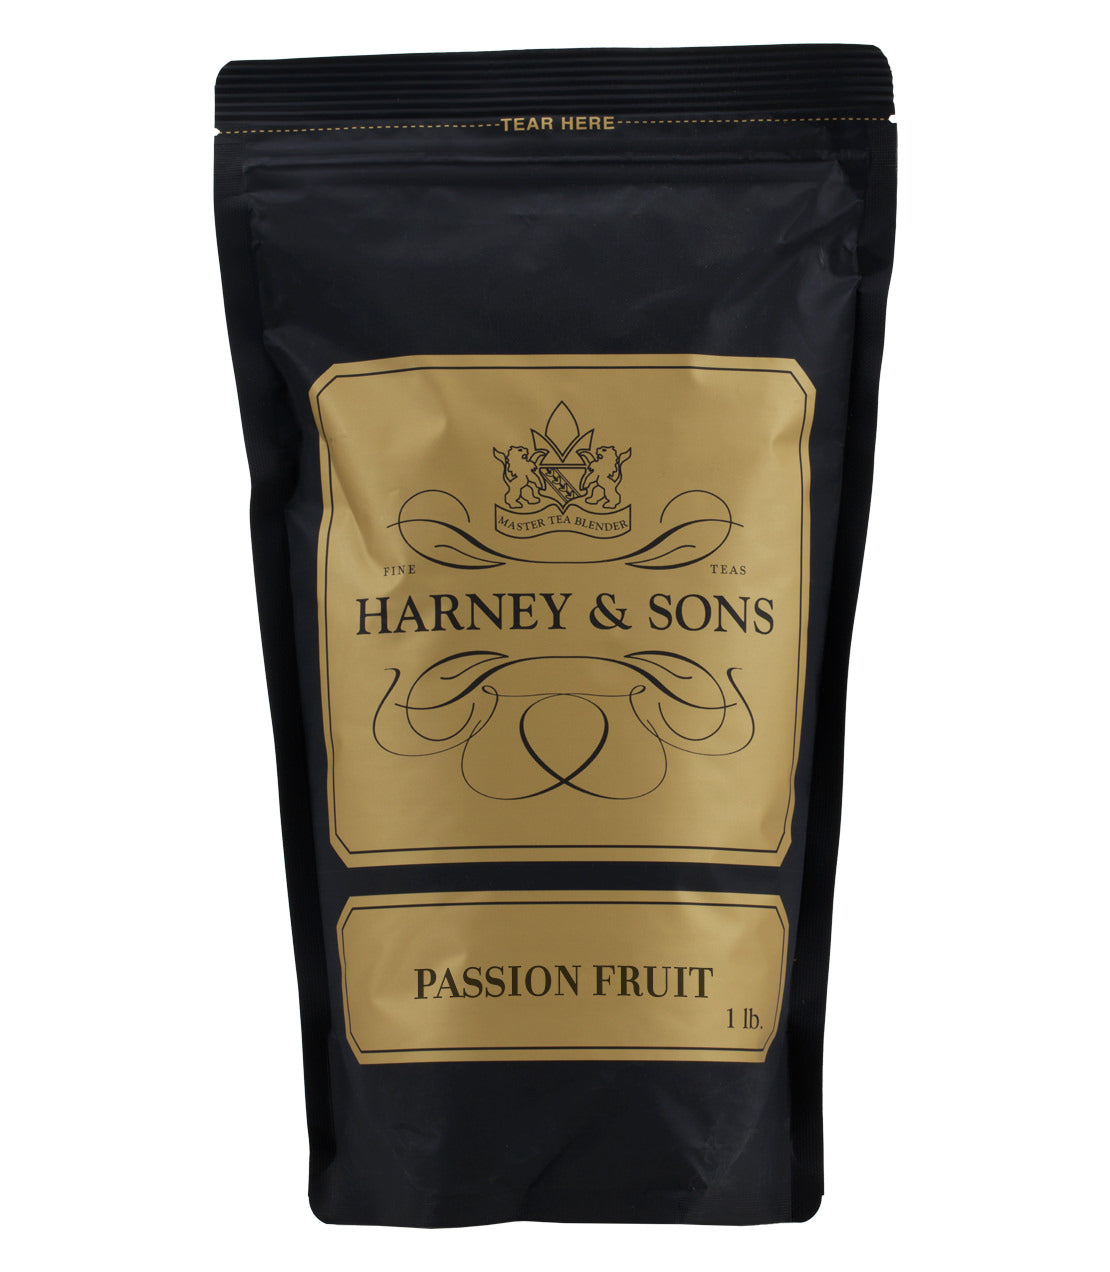 Passion Fruit - Loose 1 lb. Bag - Harney & Sons Fine Teas